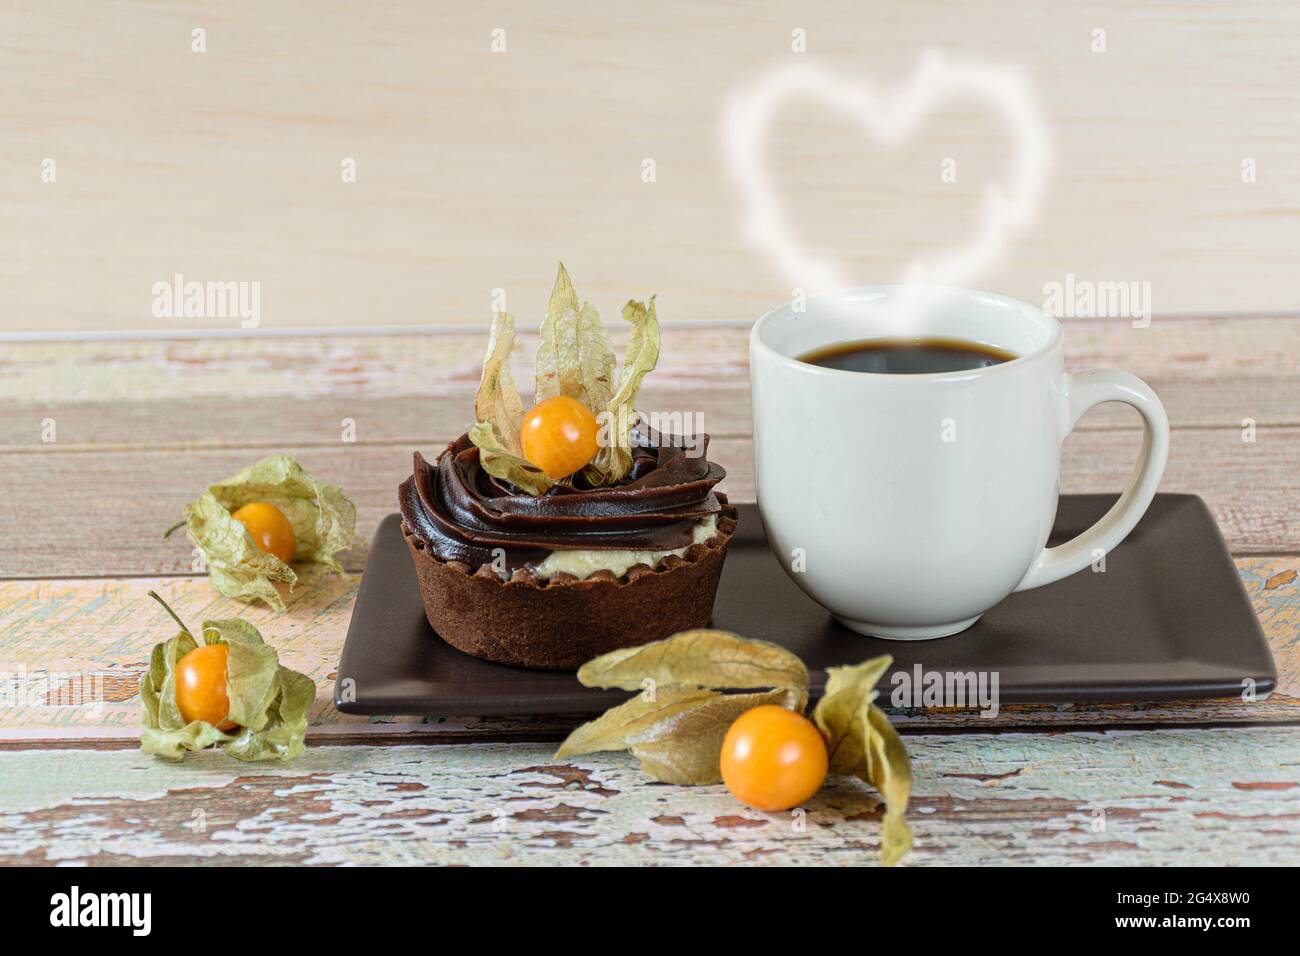 Mini torta con crema di mascarpone e ganache al cioccolato, decorata con physalis, accanto ad una tazza di caffè (con cuore di fumo). Foto Stock